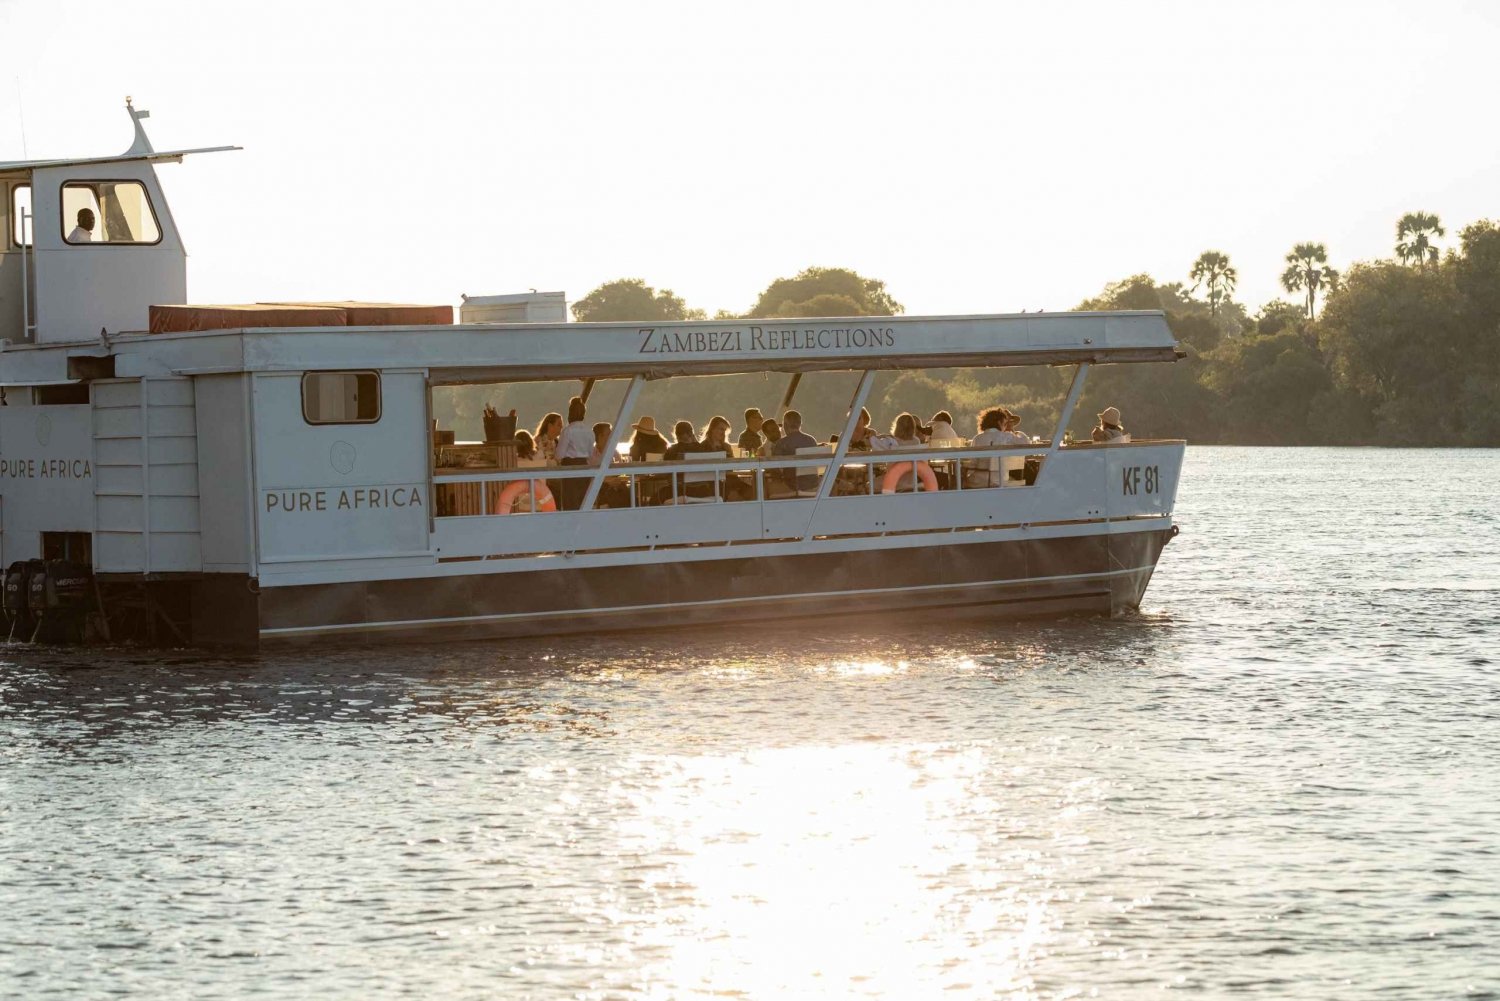 Victoria Falls: Dinner Cruise on the Zambezi River